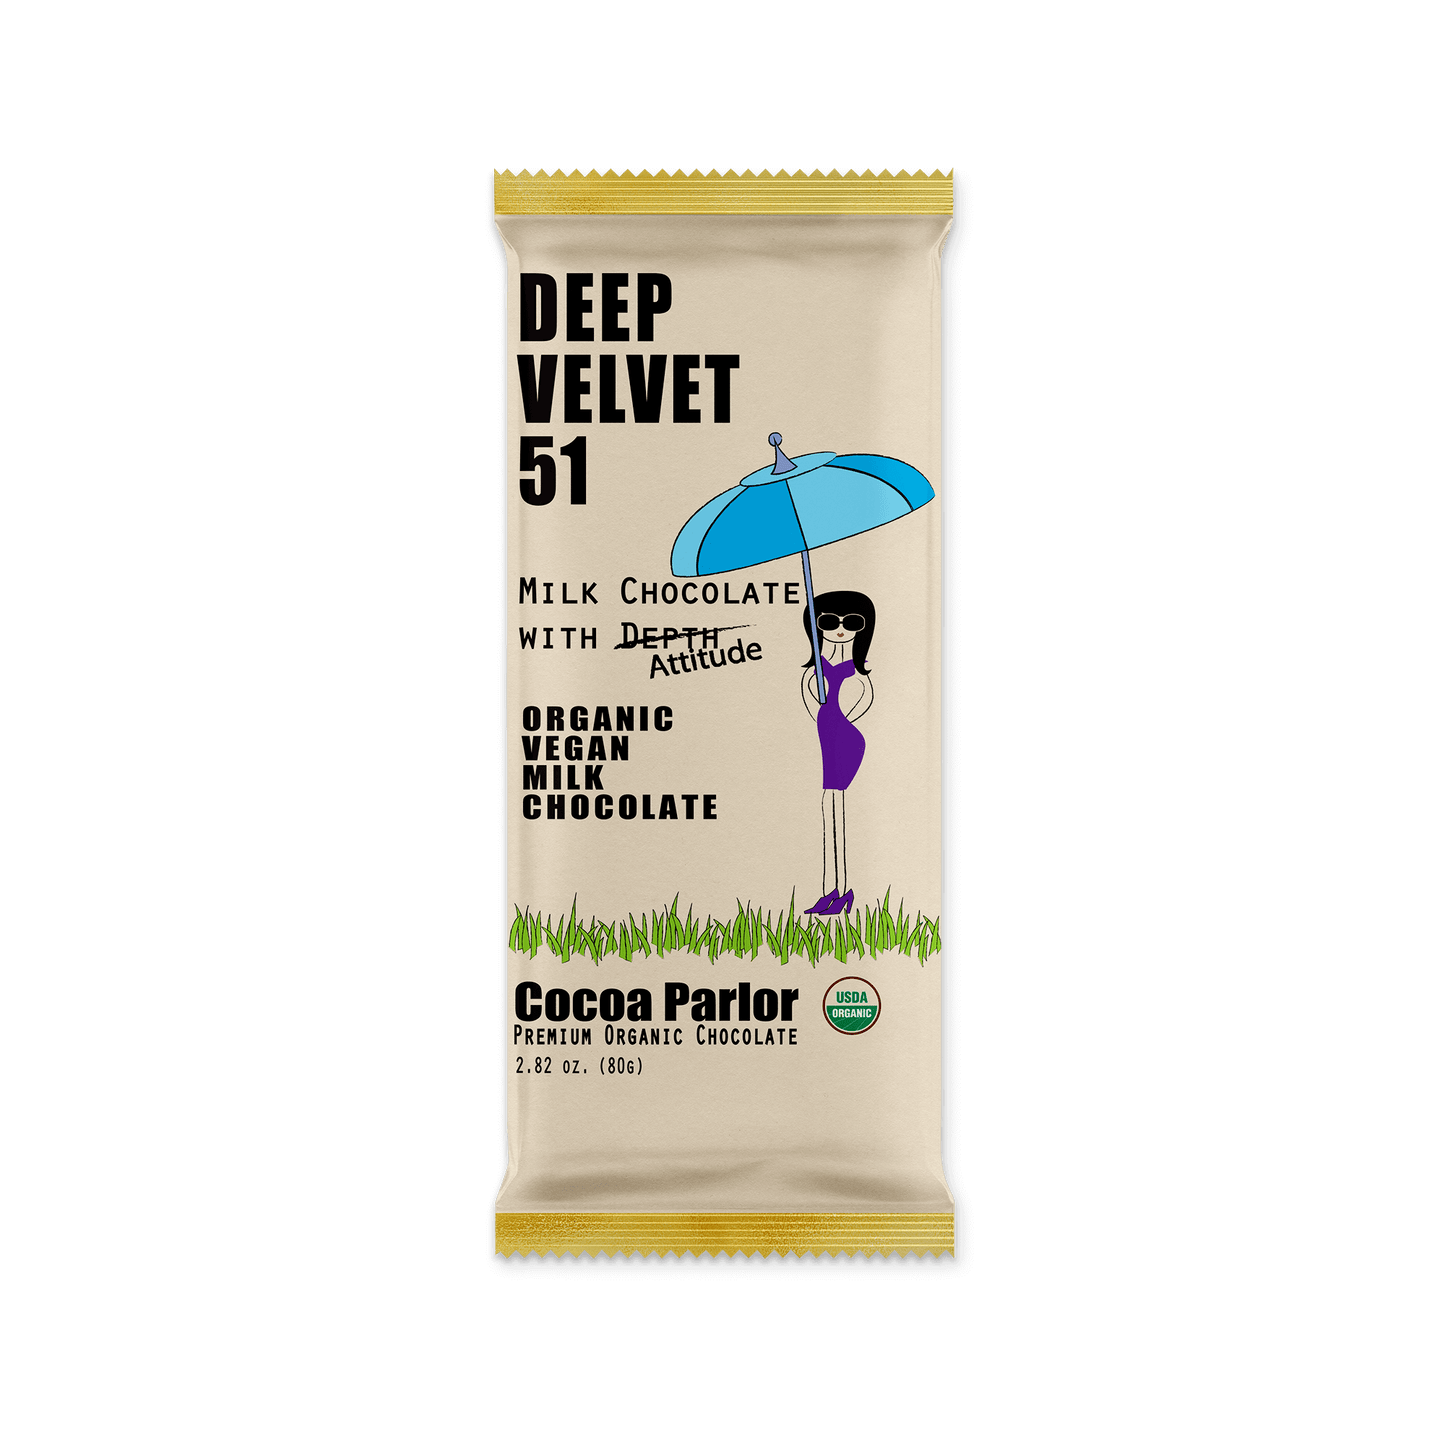 Cocoa Parlor Deep Velvet 51